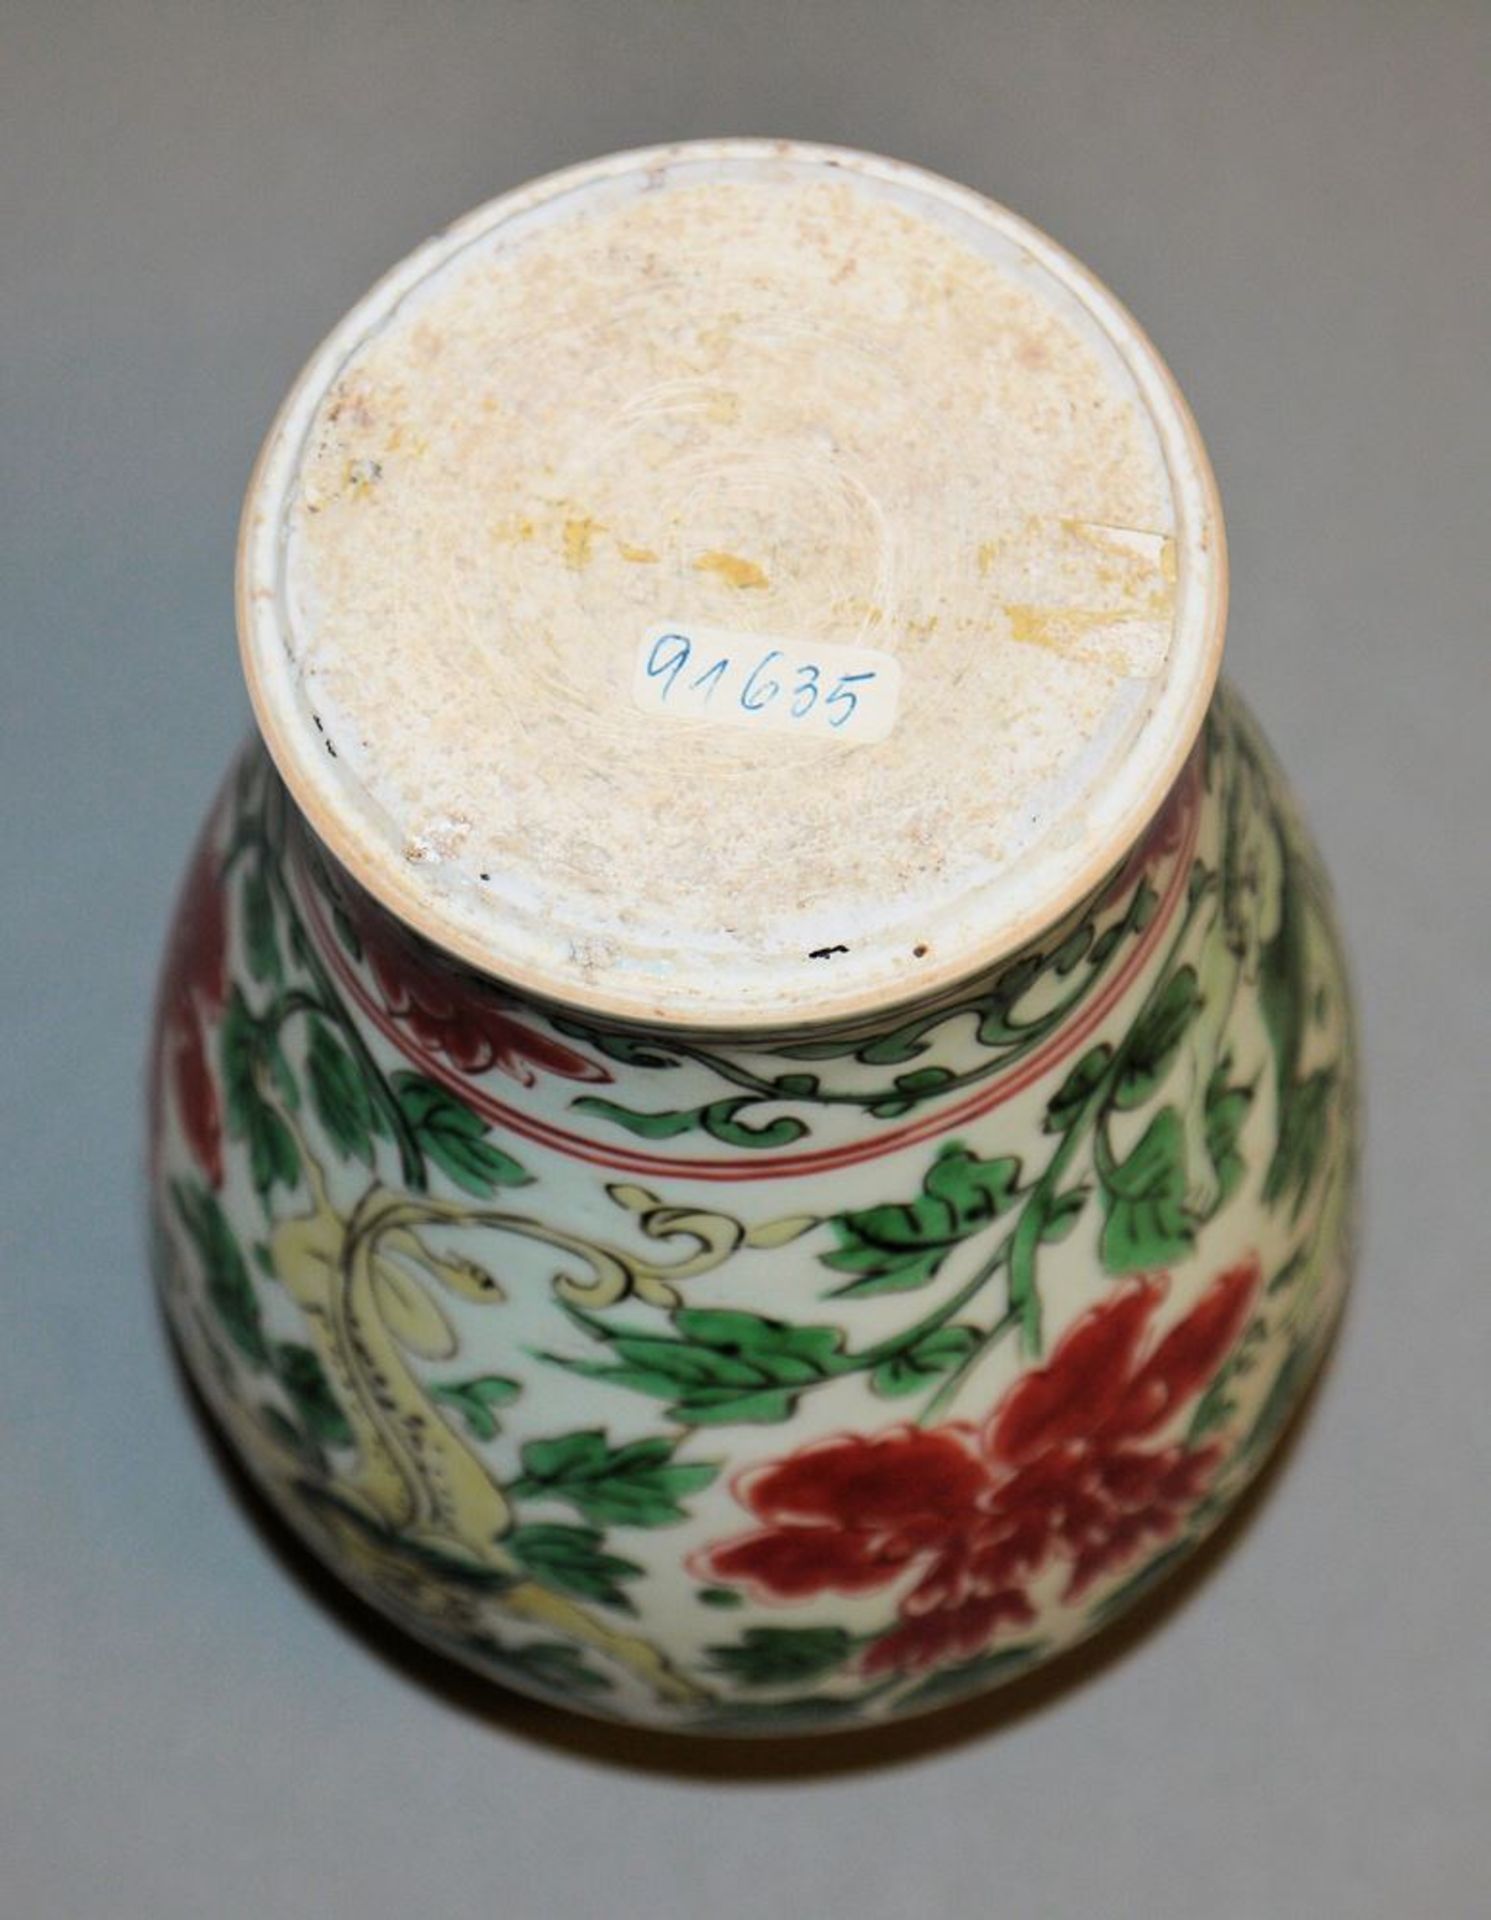 Wucai baluster vase of the Kangxi period, China circa 1700 - Image 3 of 3